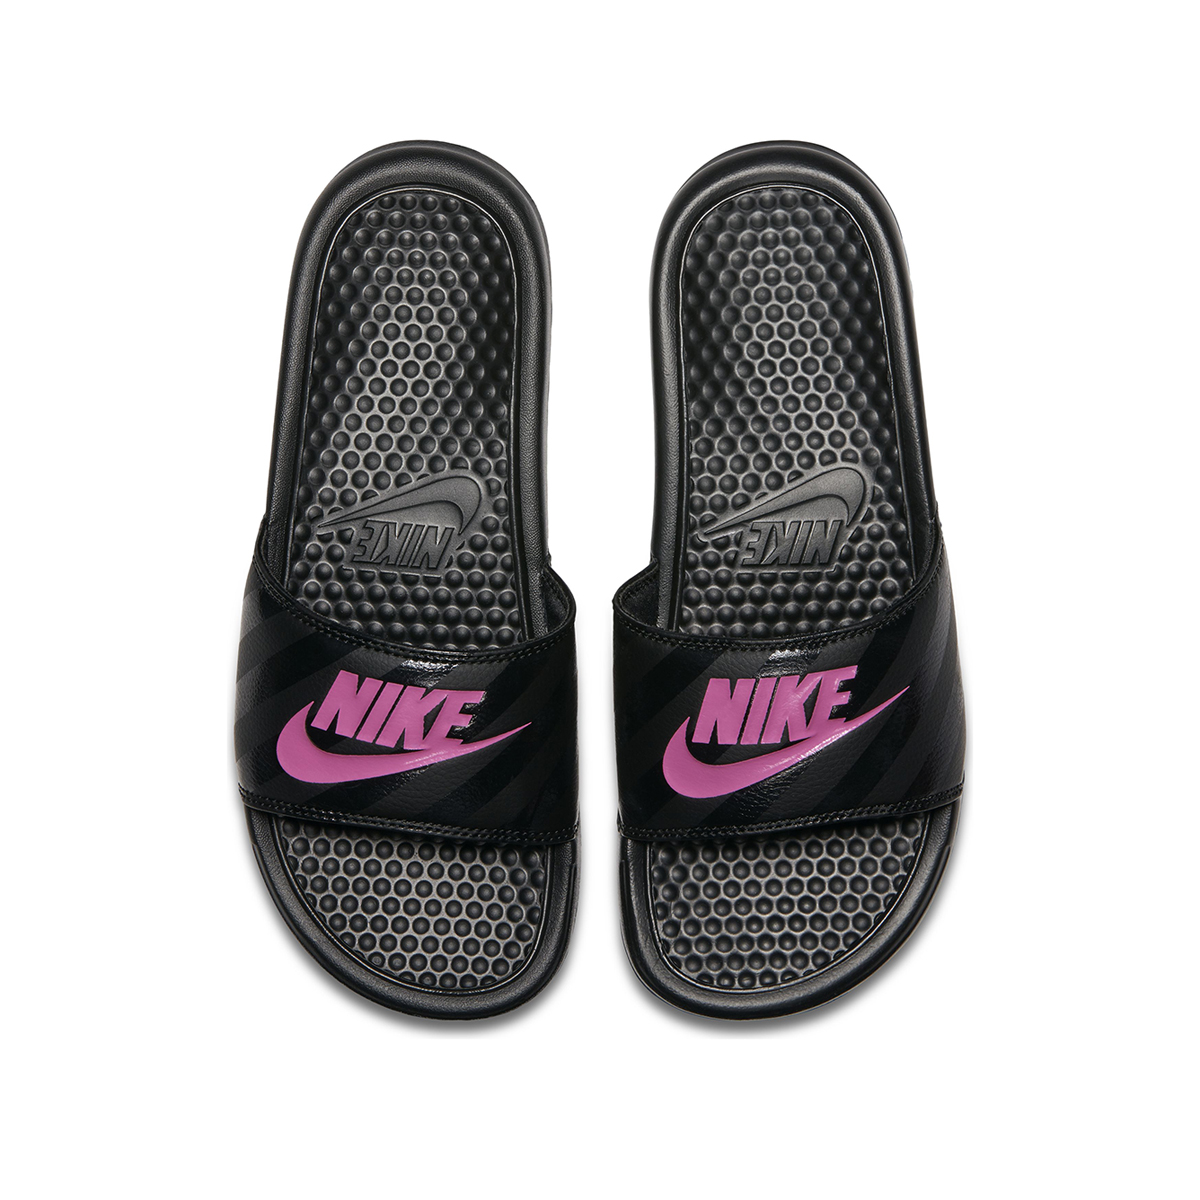 Ojotas Nike Wmns Benassi Jdi Ni,  image number null